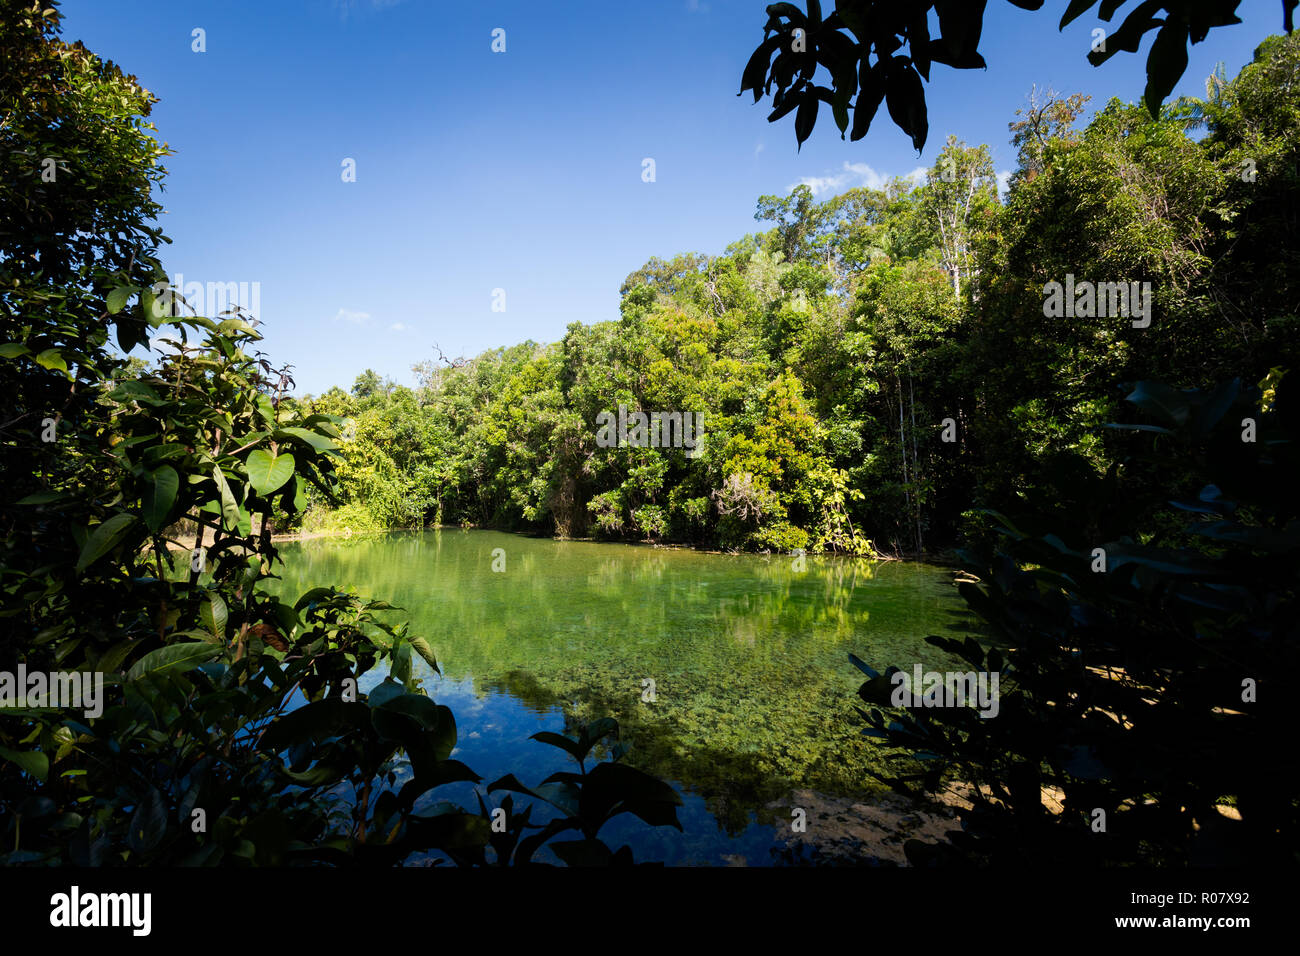 Blick auf Glas Pool, Sra Kaew in Emerald Pool park Krabi im Süden Thailands. Landschaft im schönen Thung Teao forest in Südostasien. Stockfoto